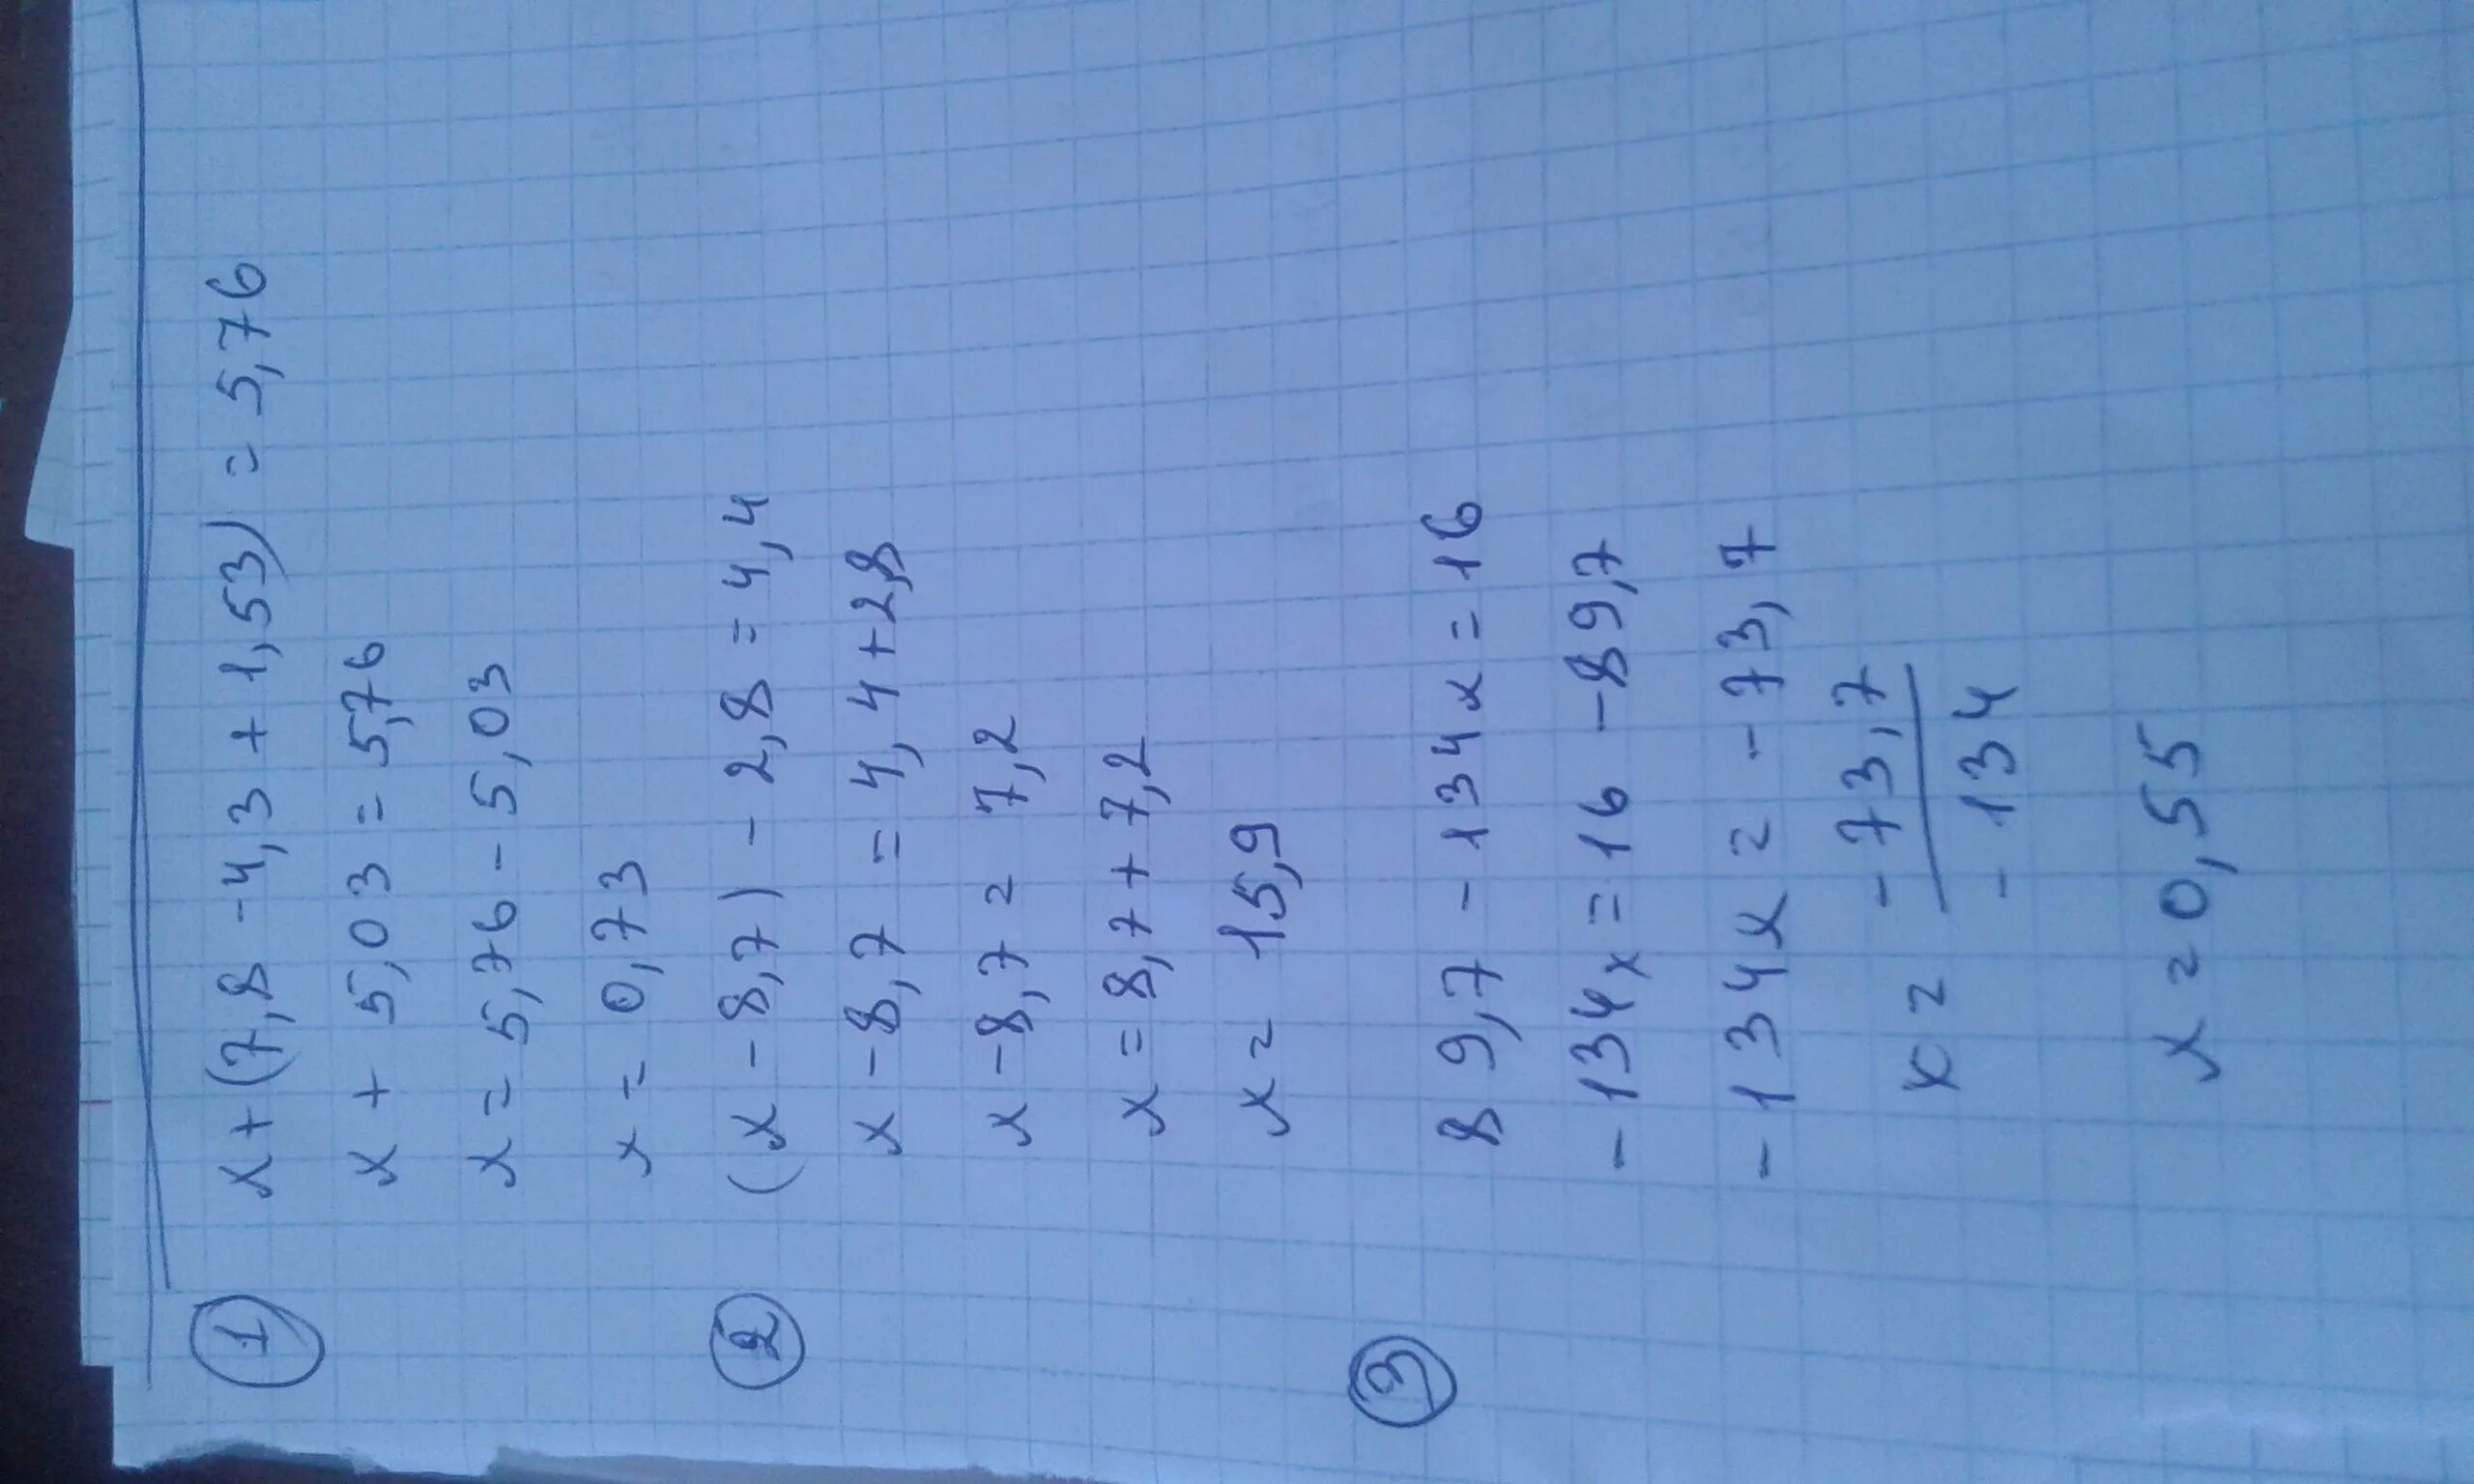 4x 7x 1 98. −X2+7x−7. Х/2-X-3/4-X+1/8<1/2. 8-7x ⩾3x+5. 1/X^2.